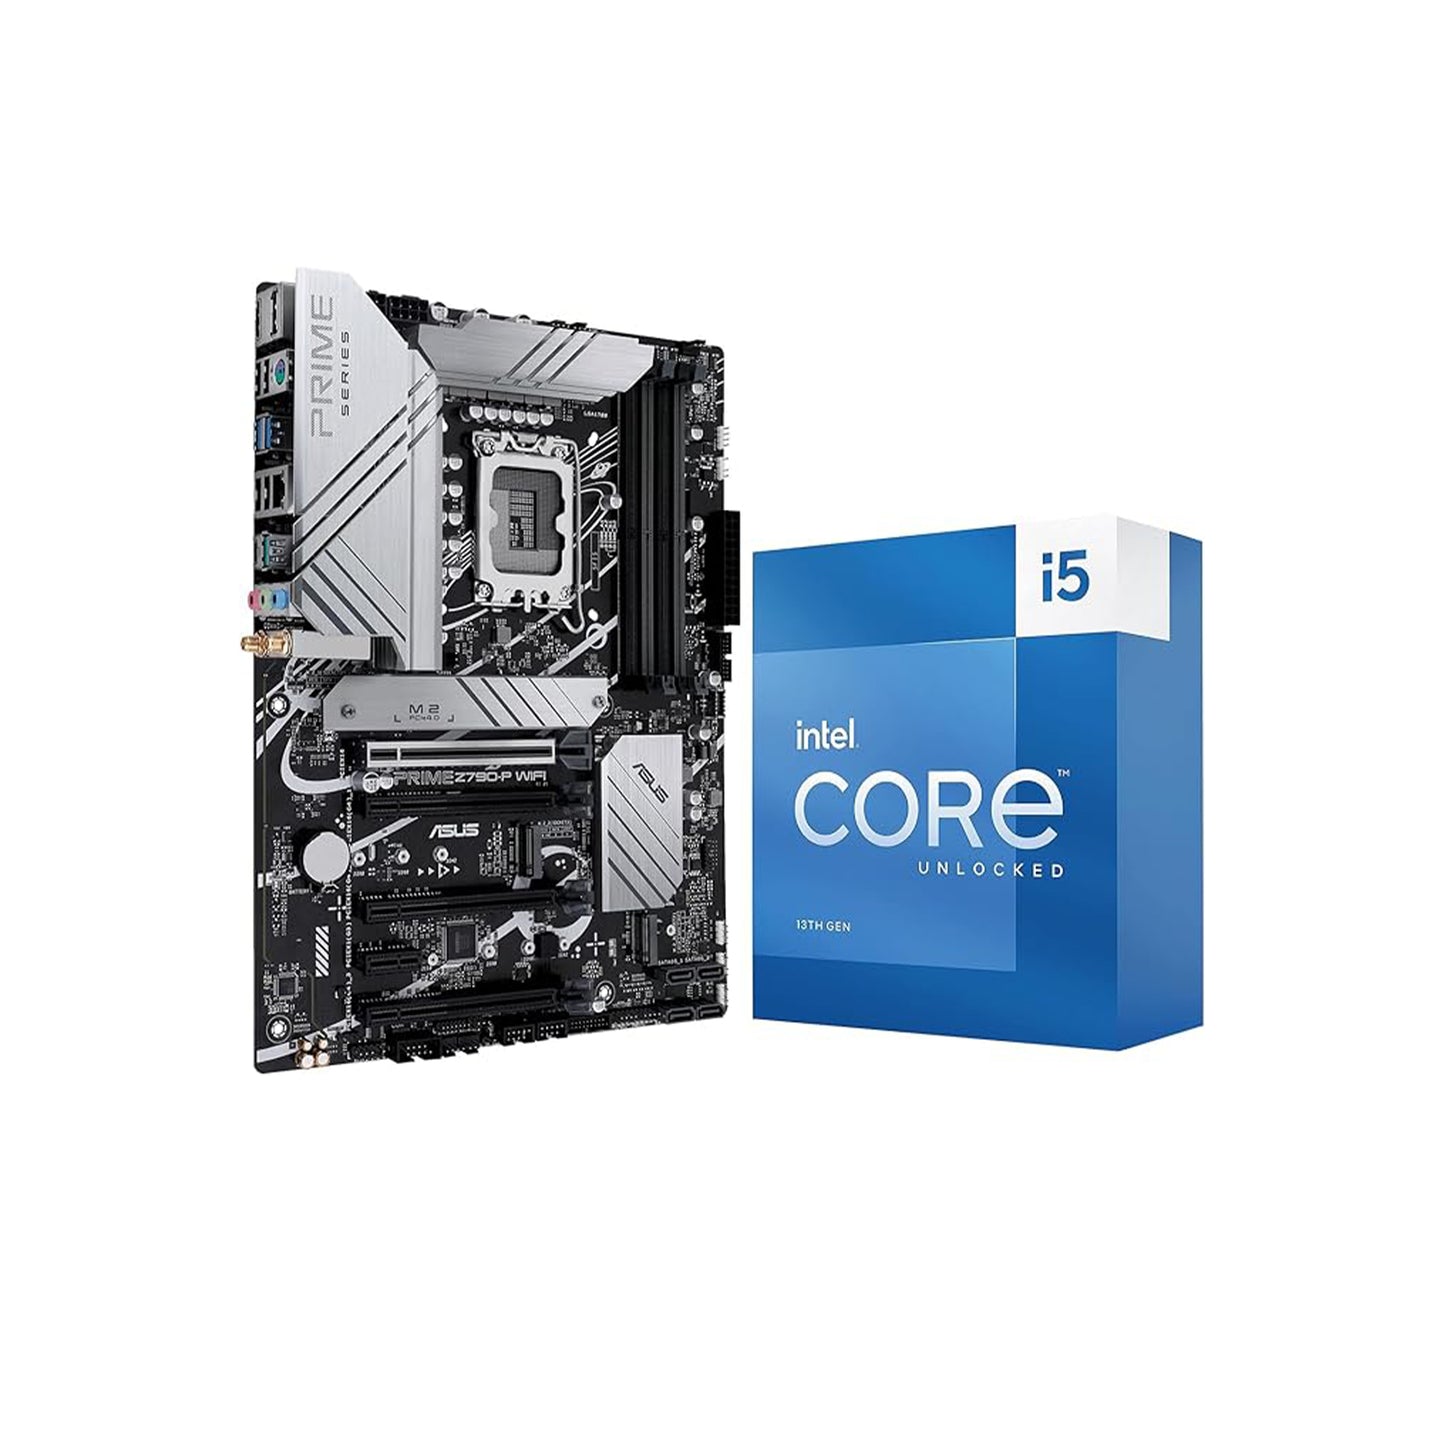 معالج Micro Center Intel Core i5-13600K 14 (6P+8E) يصل إلى 5.3 جيجاهرتز غير مقفل LGA 1700 معالج سطح المكتب مع حزمة Intel UHD Graphics 770 المدمجة مع اللوحة الأم ASUS Prime Z790-V WiFi DDR5 ATX 